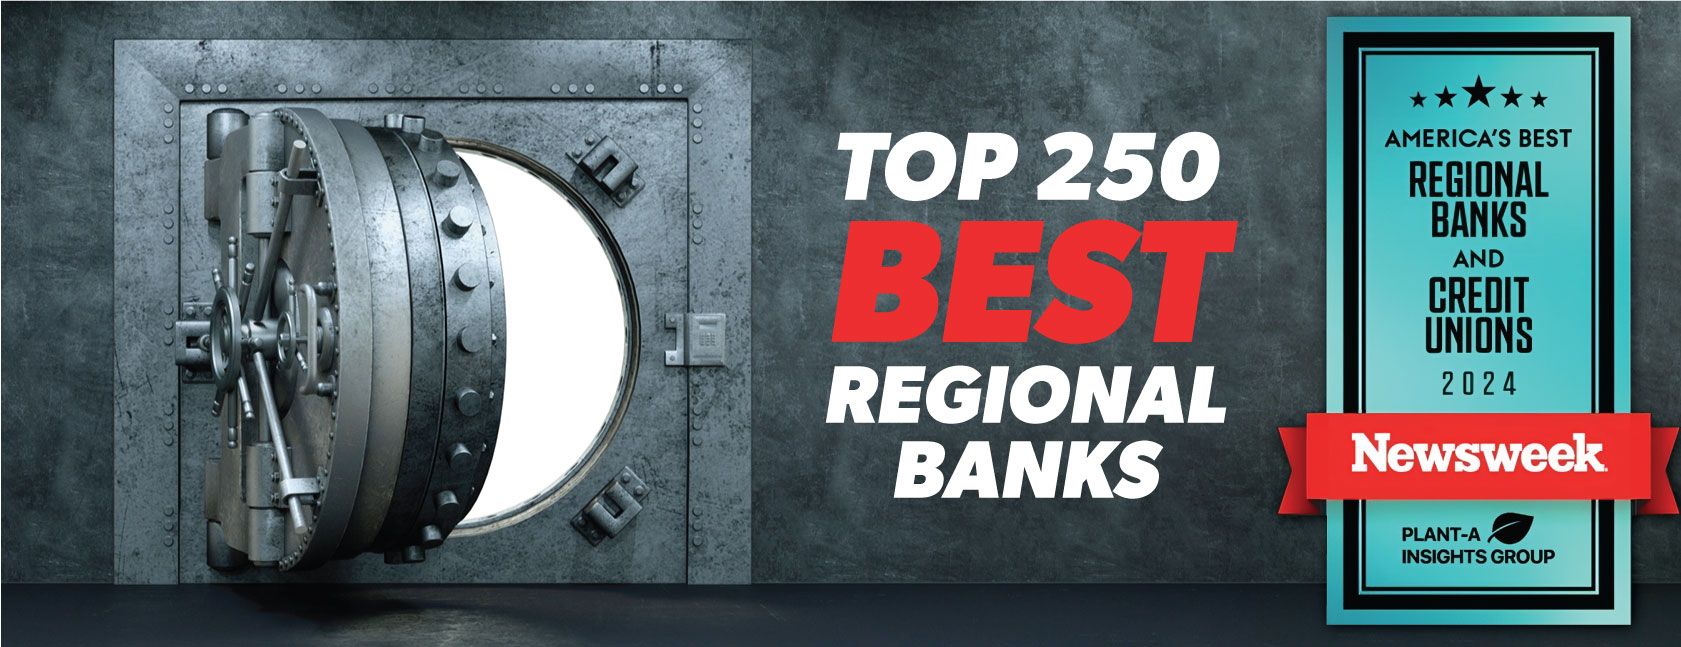 FNB Bank ranked in top 250 best regional banks